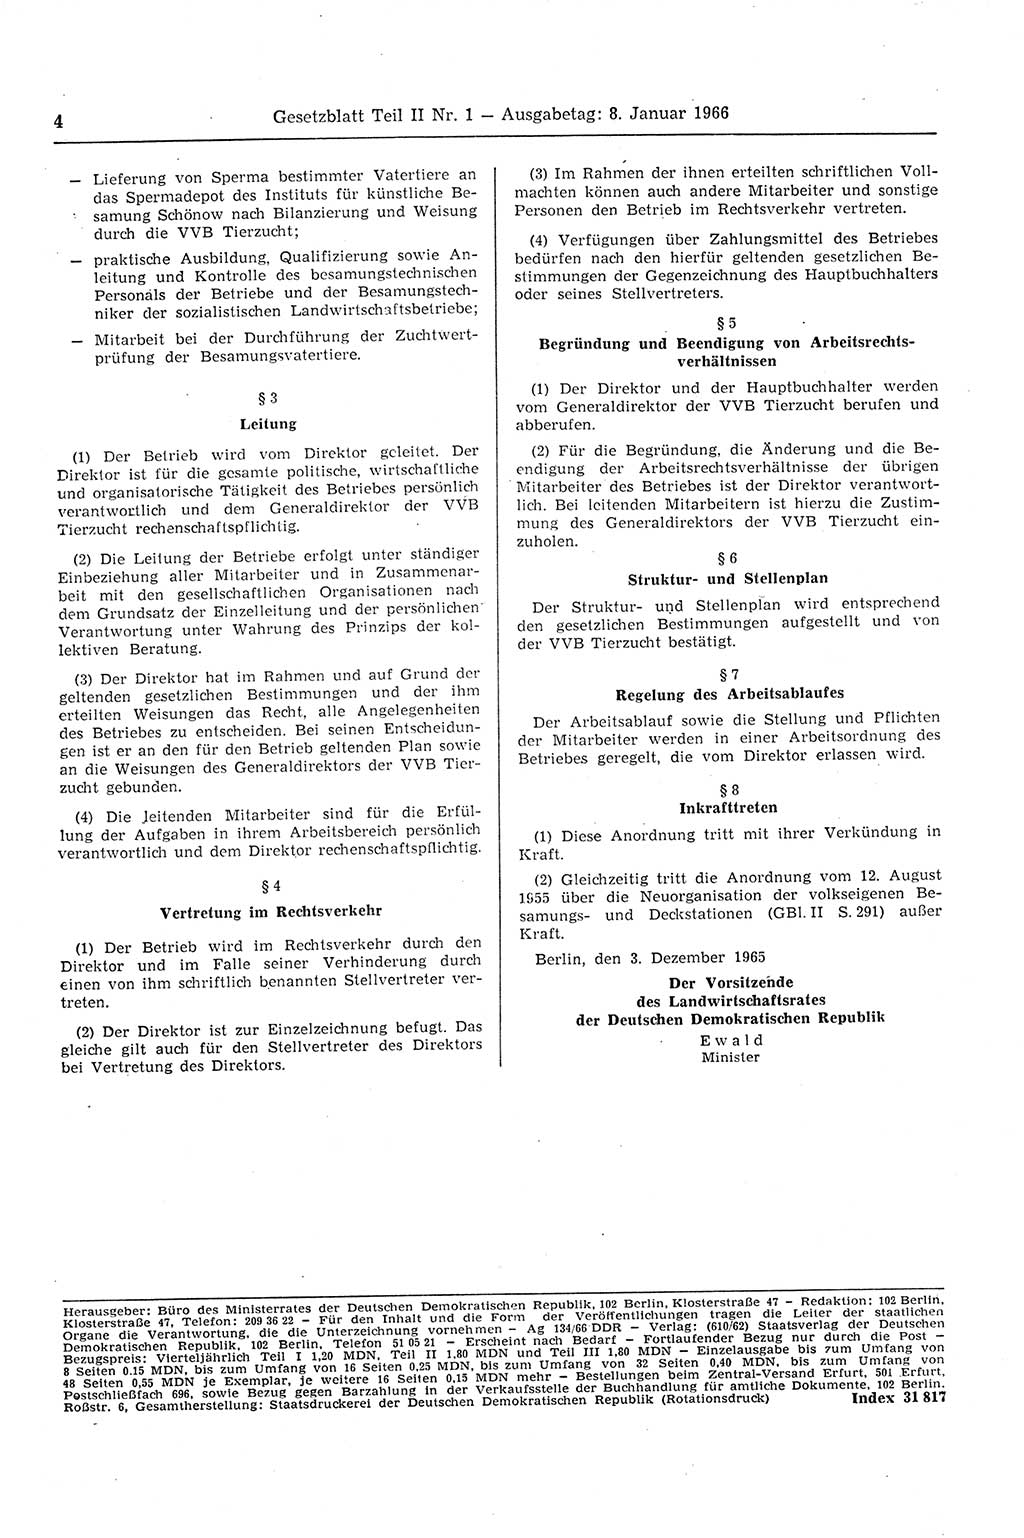 Gesetzblatt (GBl.) der Deutschen Demokratischen Republik (DDR) Teil ⅠⅠ 1966, Seite 4 (GBl. DDR ⅠⅠ 1966, S. 4)